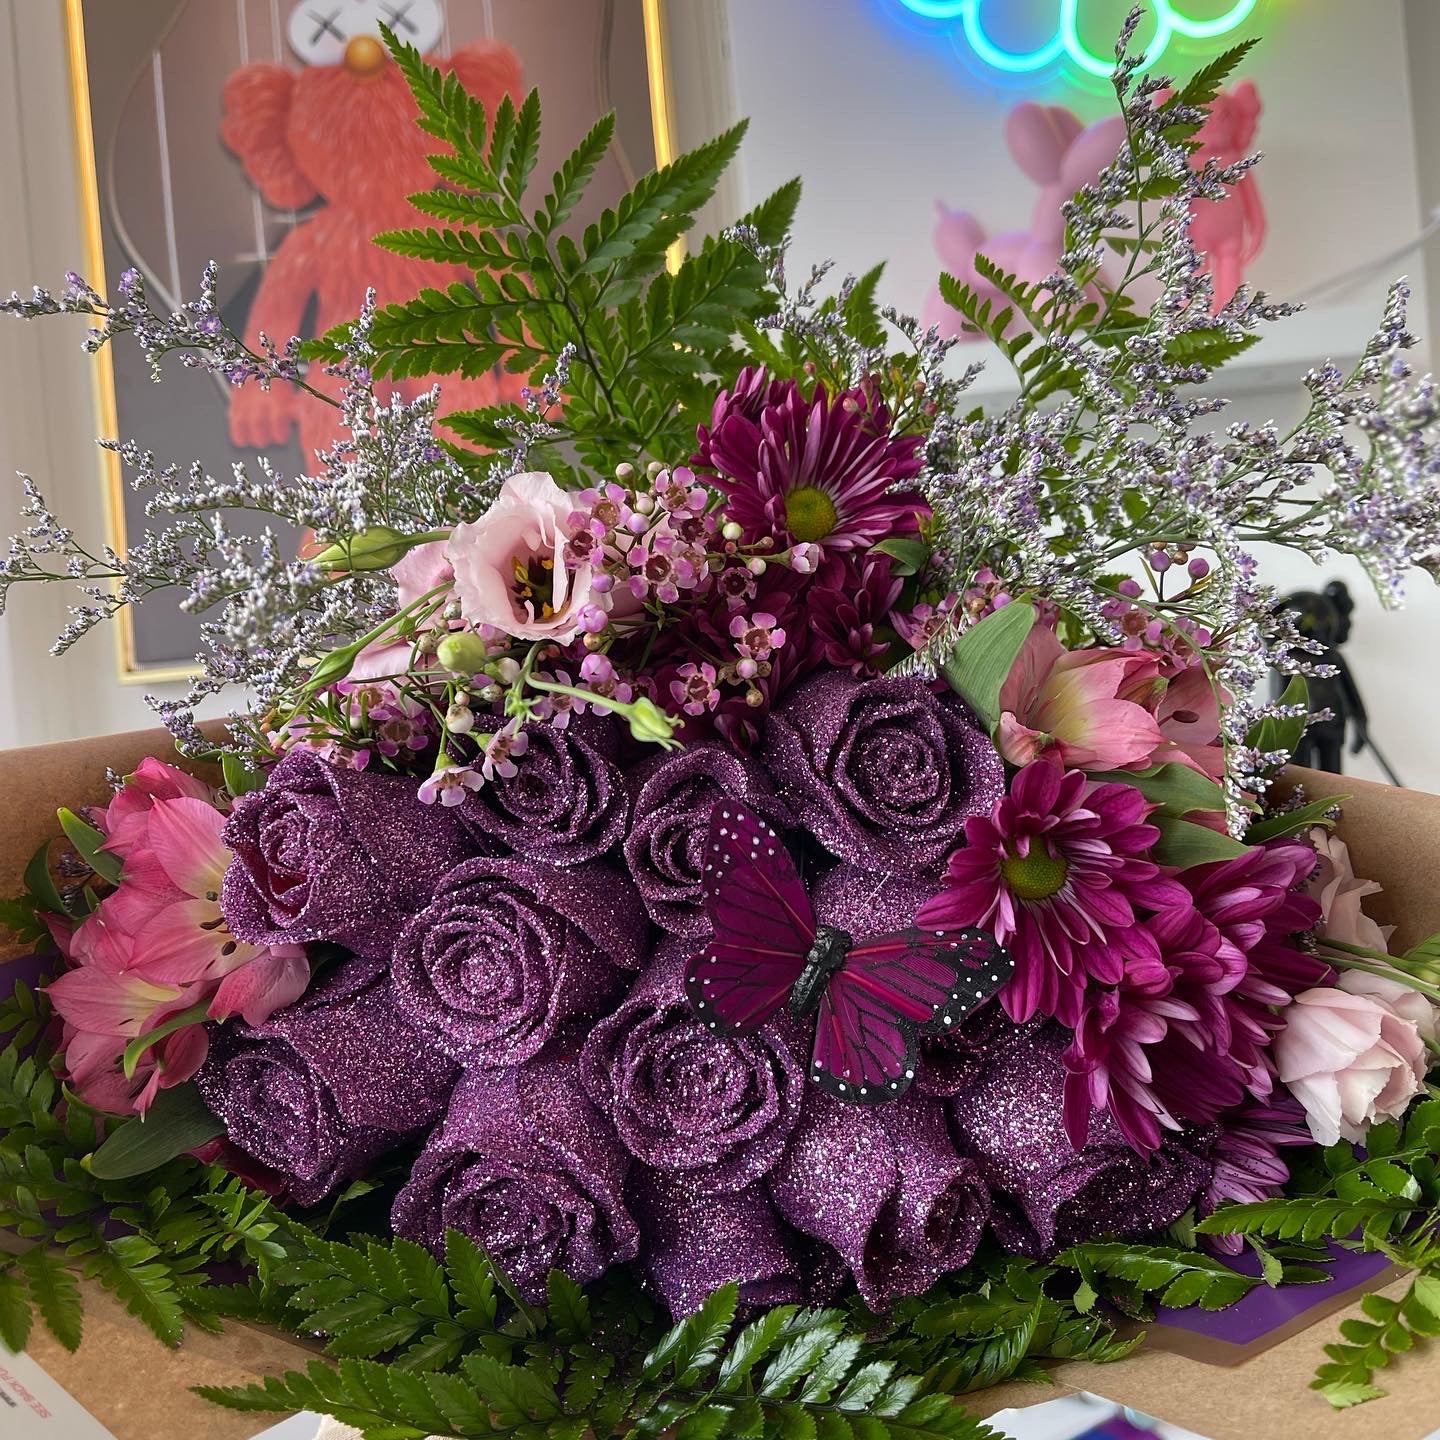 Purple glitter roses 🫶🏽 #detroitflorist #flowertiktok #glitterroses , Roses